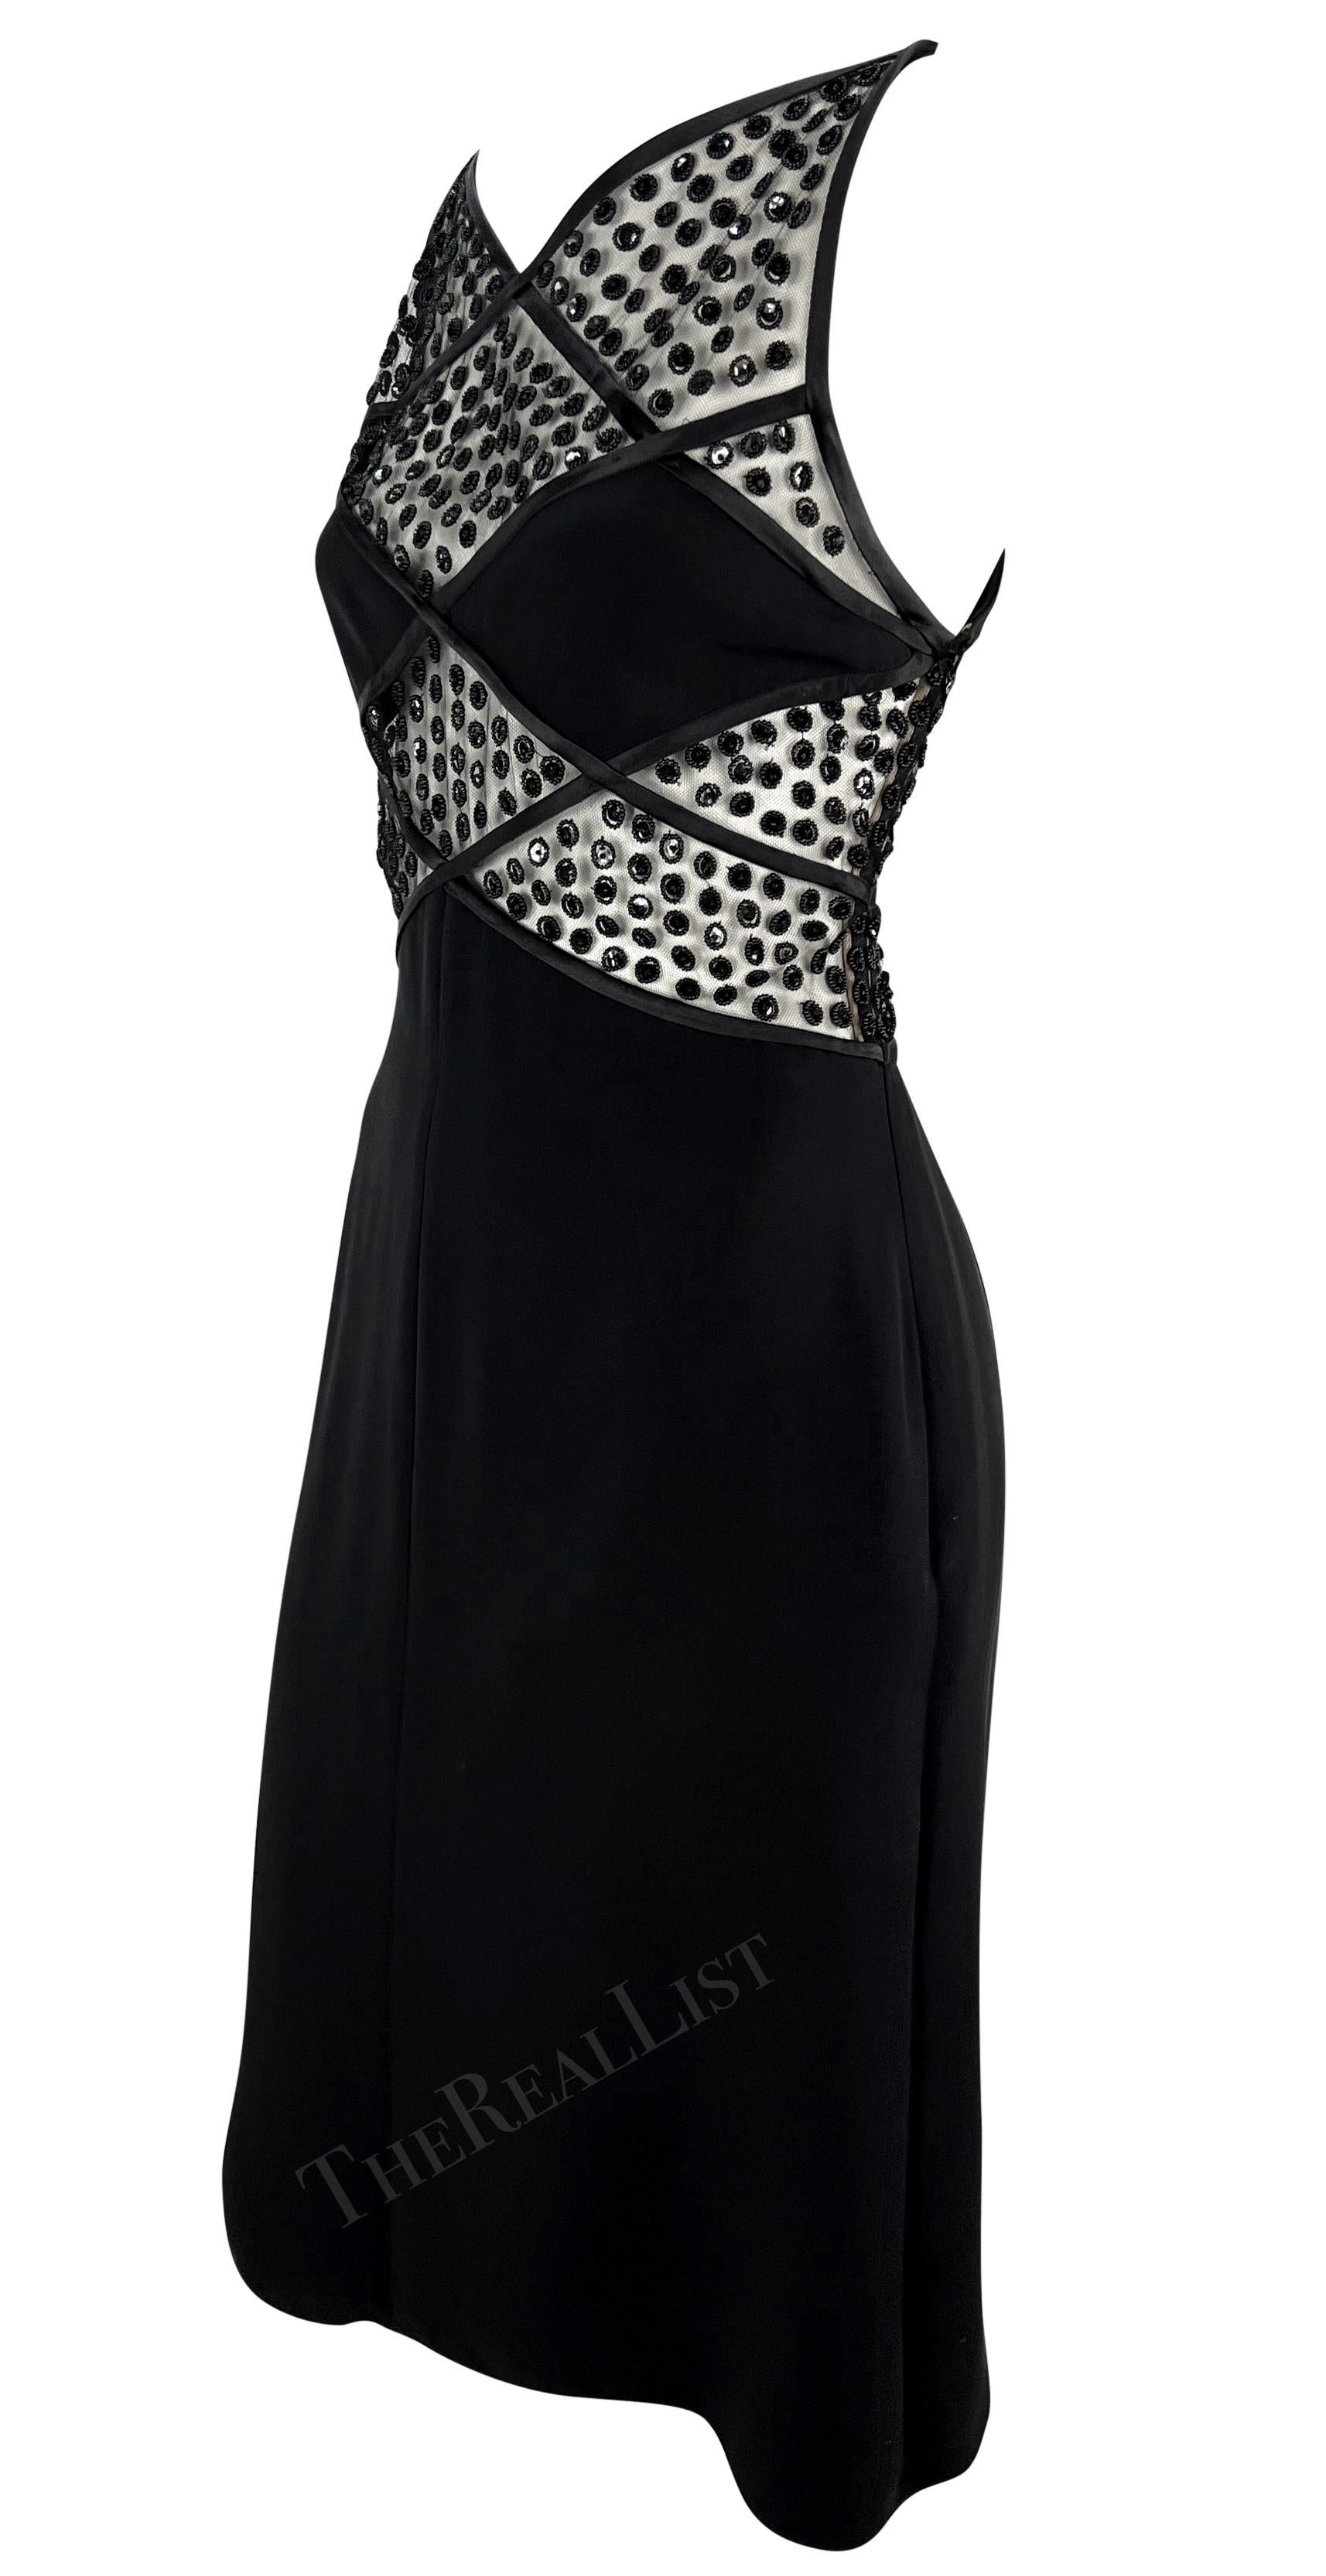 Voici une fabuleuse mini robe noire Valentino de la collection automne/hiver 2004. Cette robe ultra sexy présente des panneaux en forme de diamant au-dessus de la taille, ornés de grappes de paillettes et de perles cousues à la main. Des panneaux de